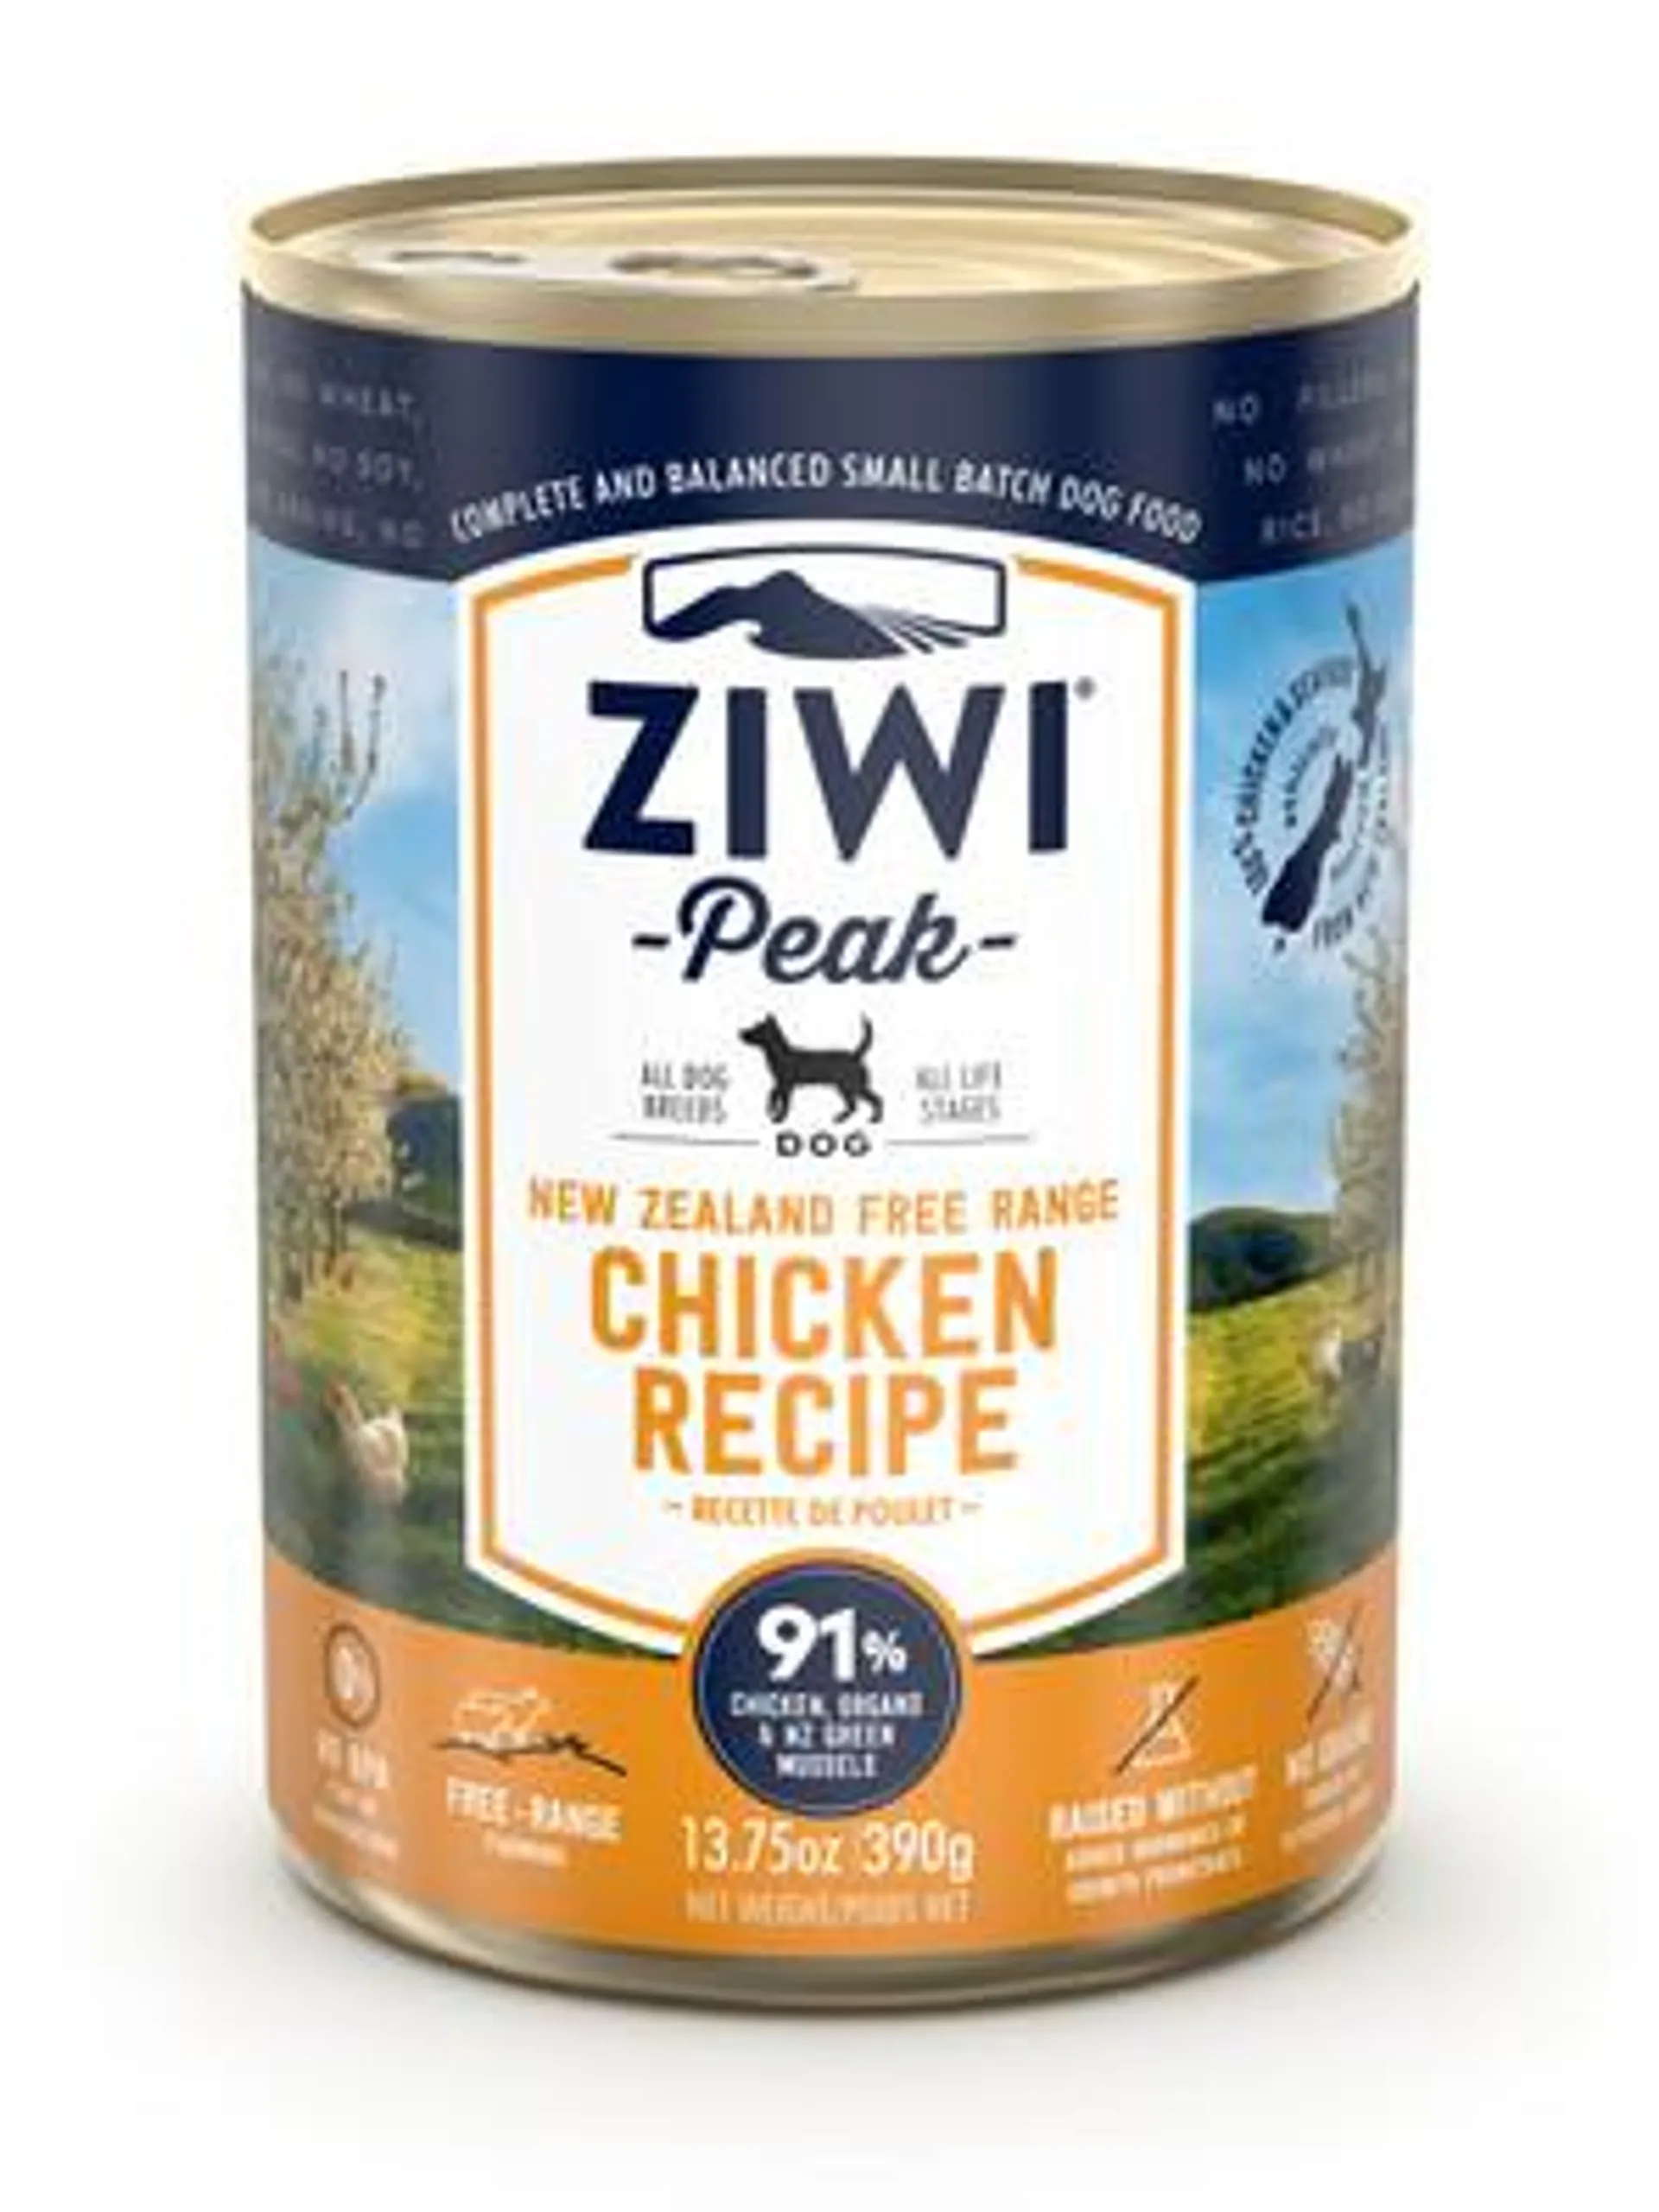 Ziwi Peak Wet Dog Food Chicken